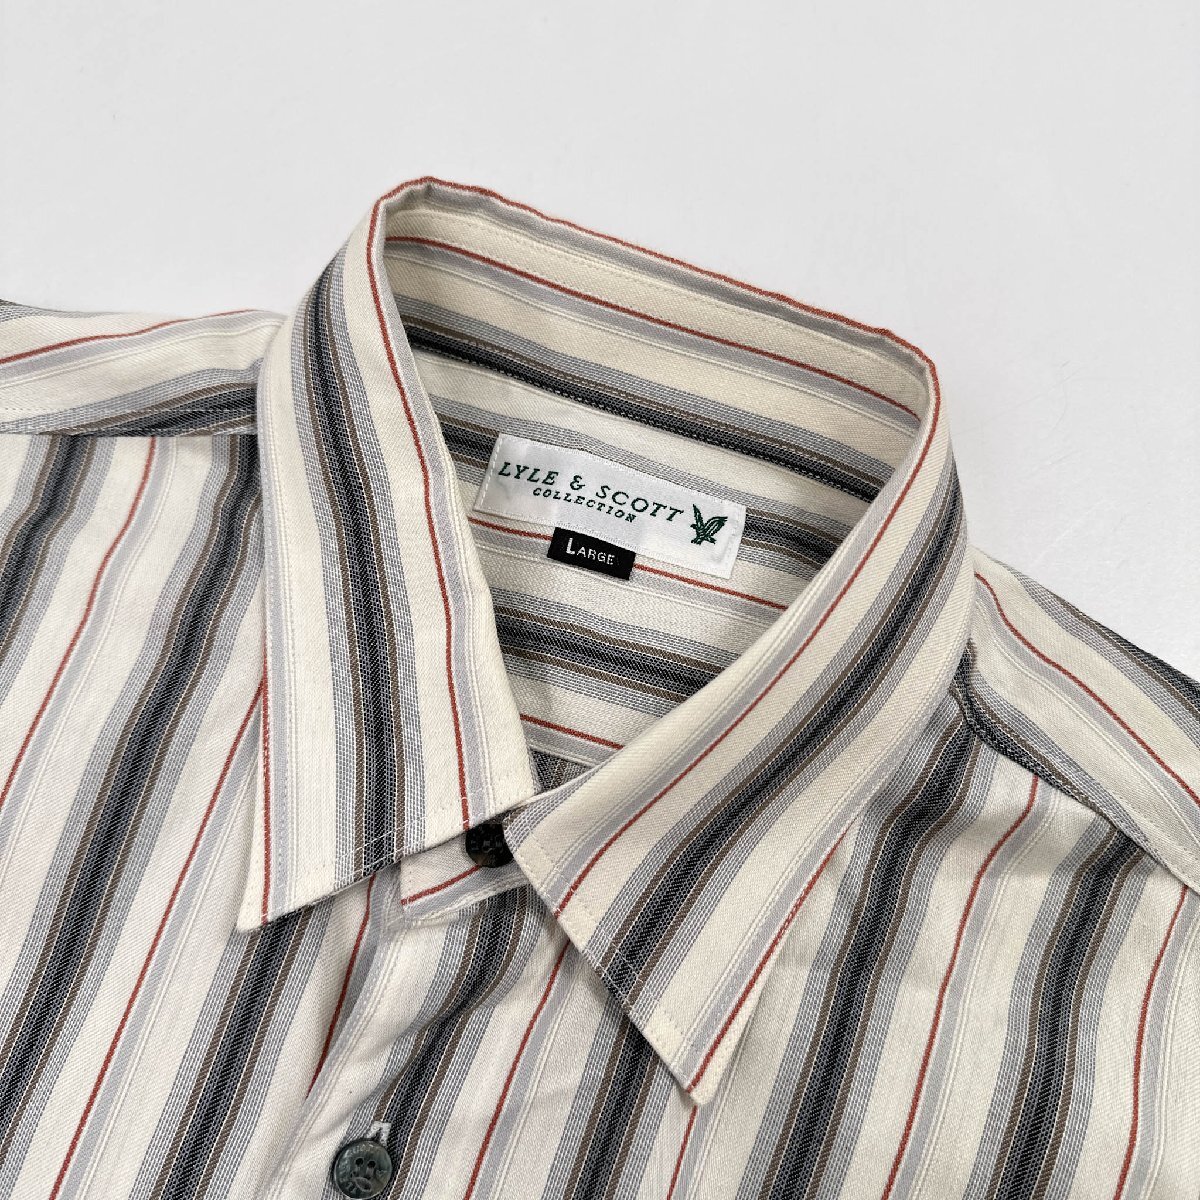 LYLE&SCOTTla il & Scott stripe pattern long sleeve shirt L size / men's casual Golf made in Japan 